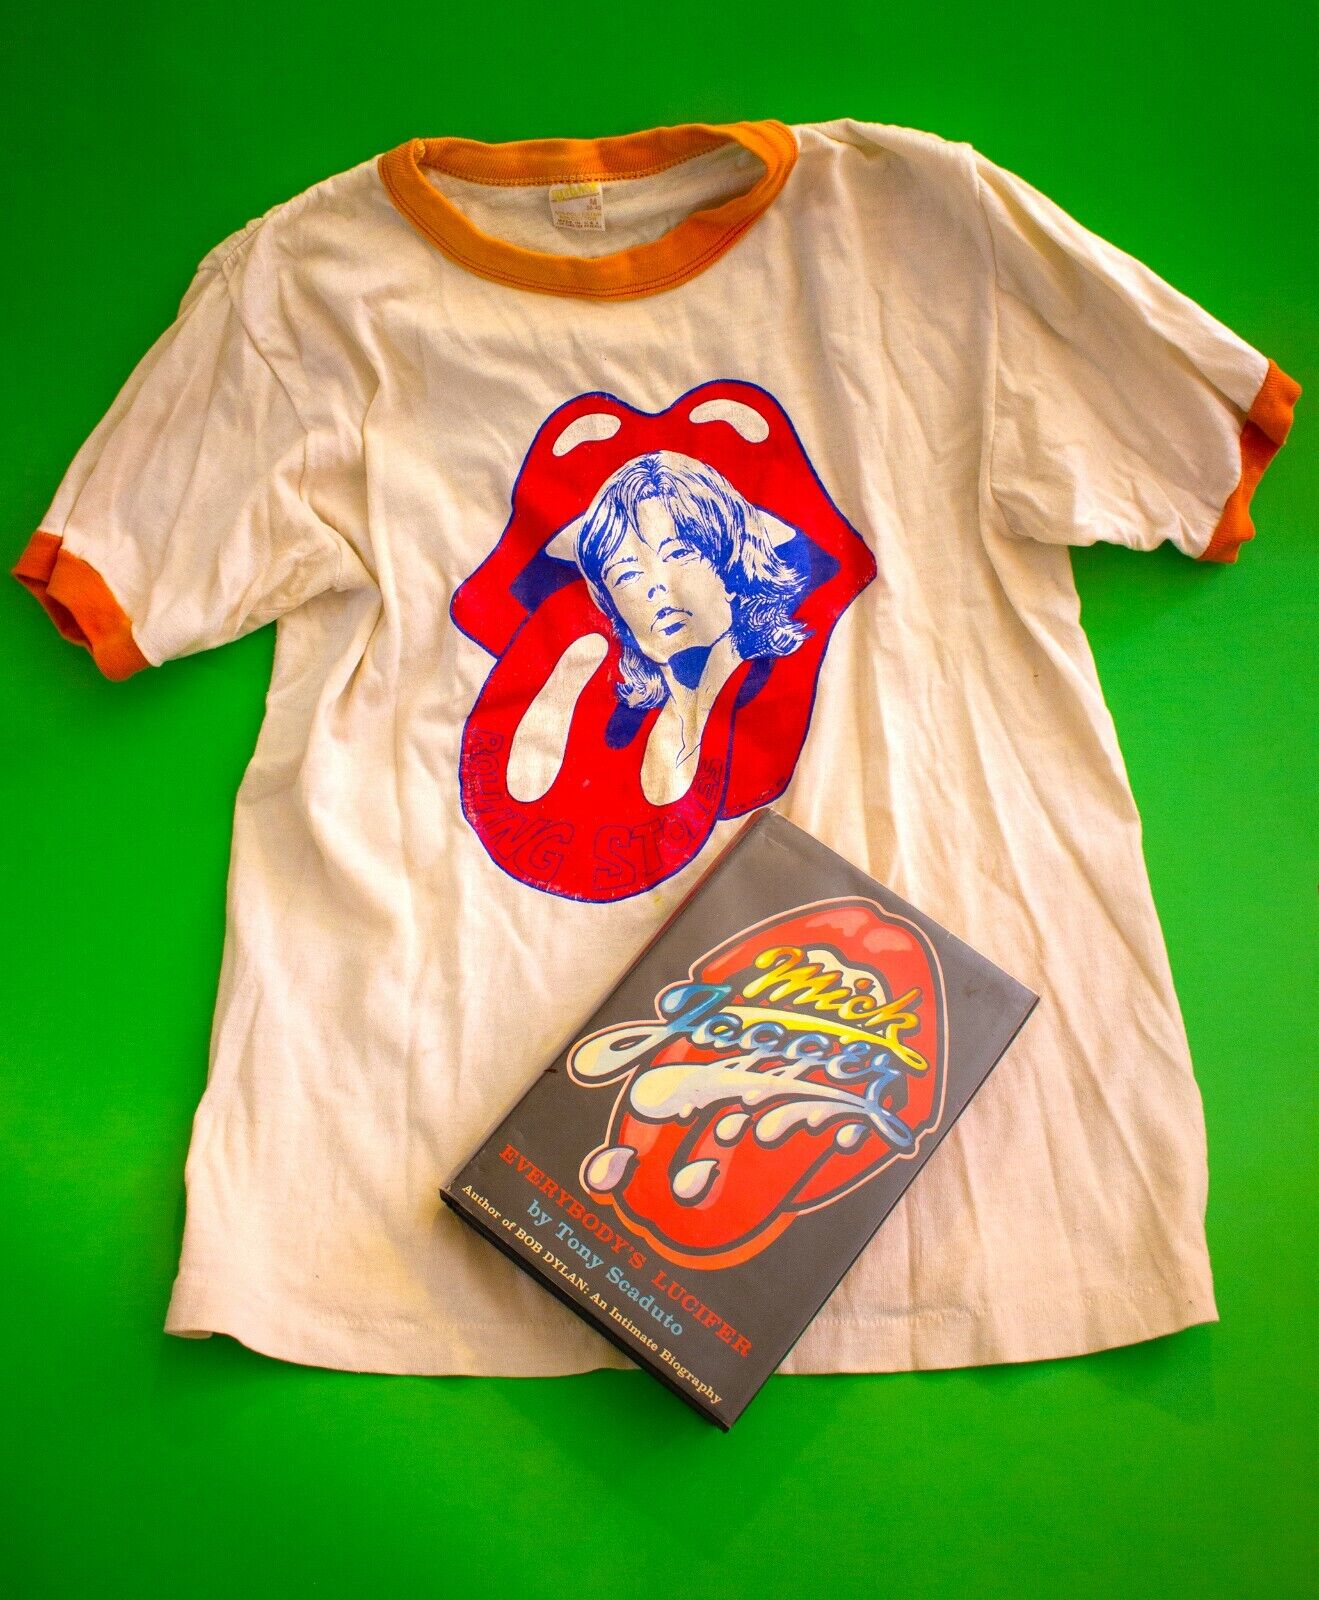 Authentic Vintage '73 Rolling Stones T-Shirt and Goodie Bag + Secret Surprise 